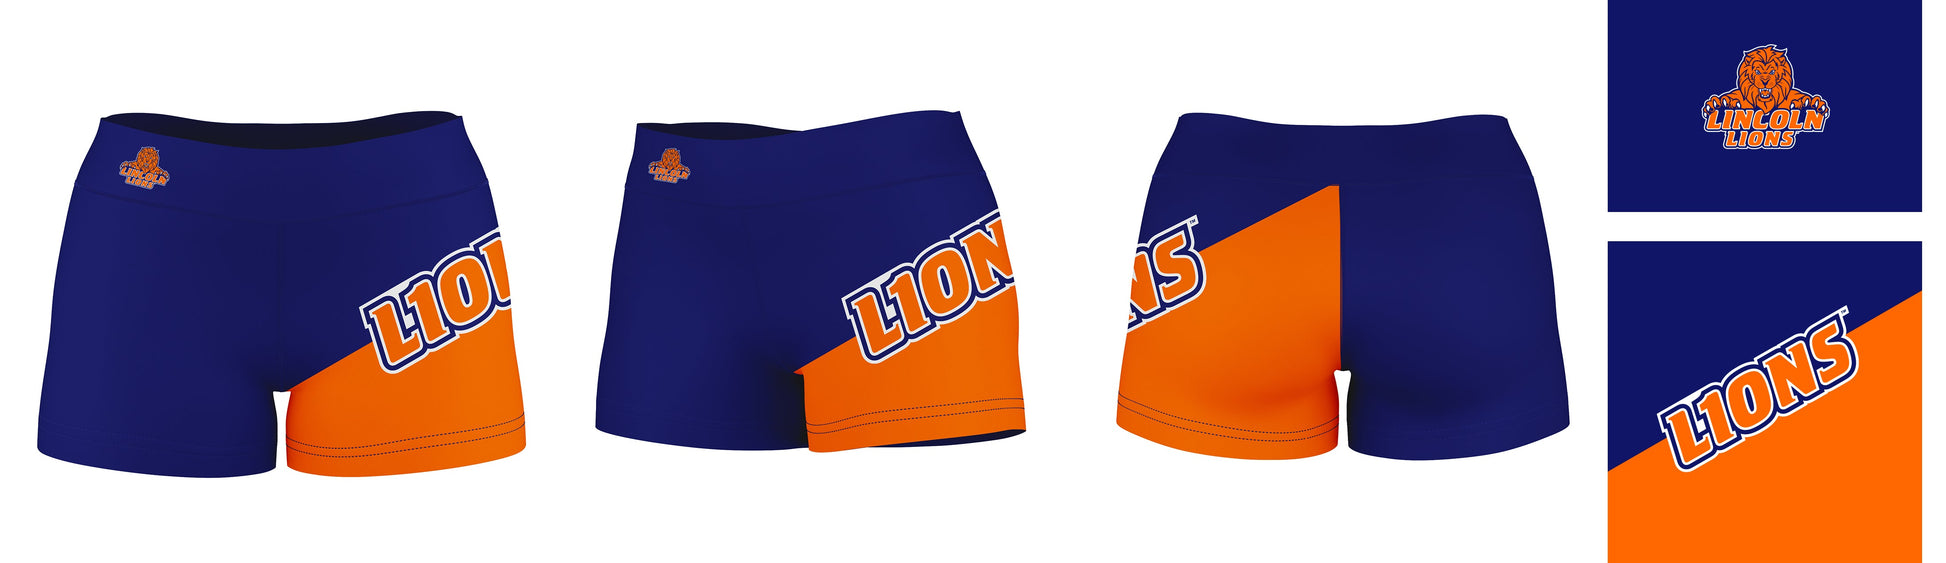 Lincoln University Lions LU Vive La Fete Game Day Collegiate Leg Color Block Women Blue Orange Optimum Yoga Short - Vive La F̻te - Online Apparel Store